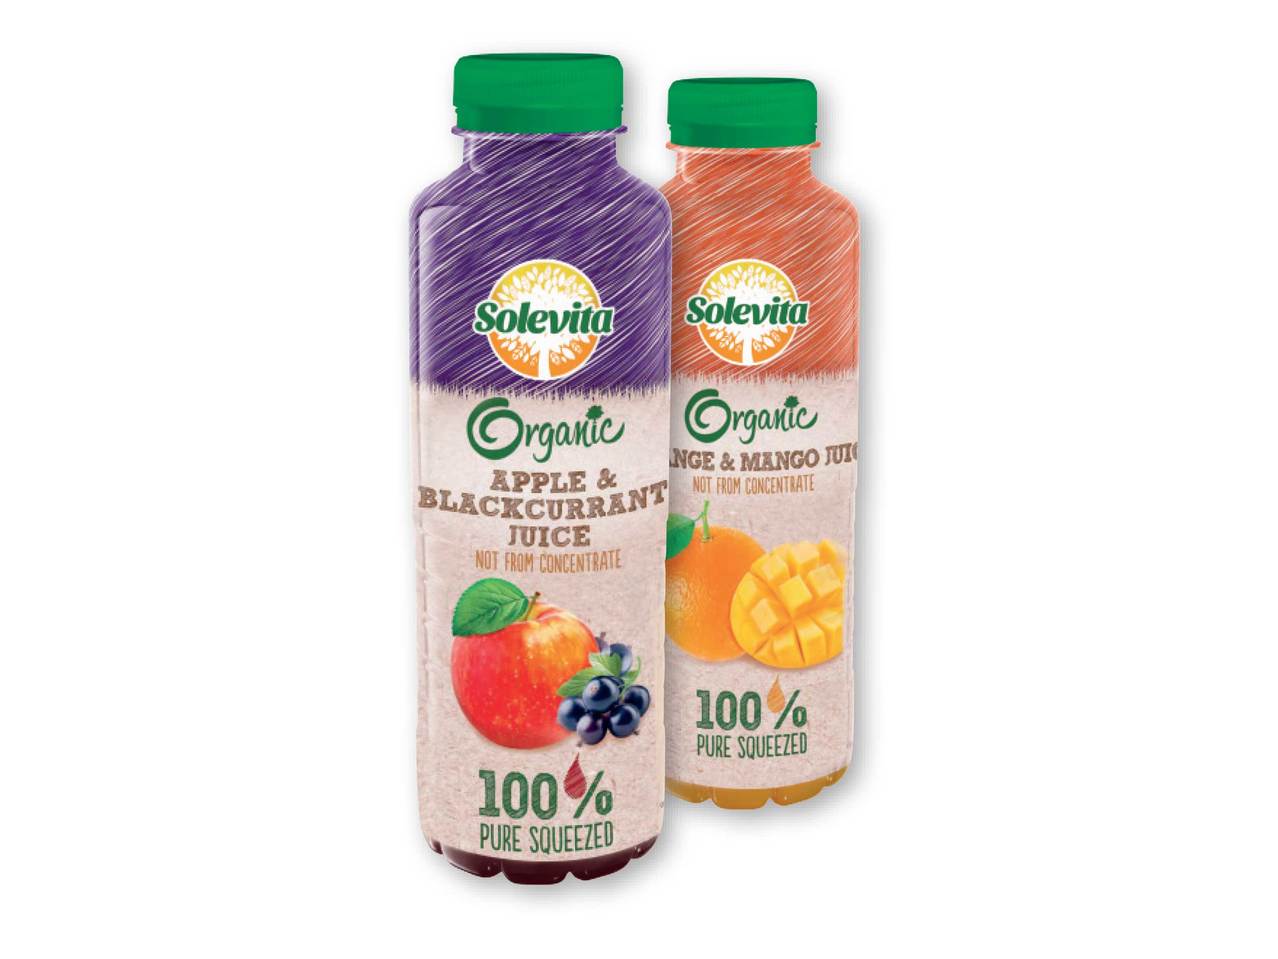 SOLEVITA(R) Organic Juice